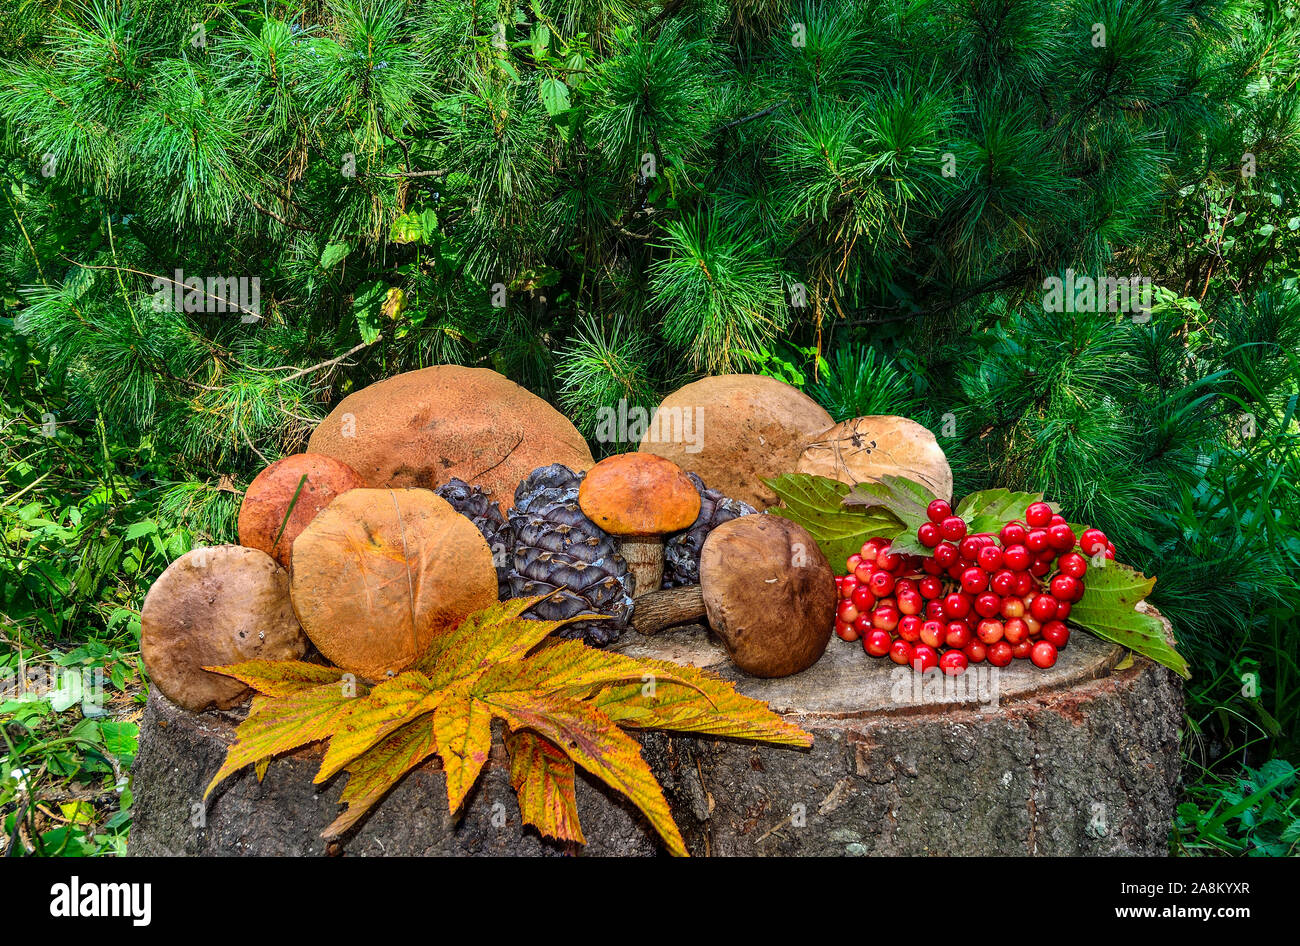 Moisson d'automne forêt : champignons comestibles, les cônes de cèdre, baies rouges de viburnum, multi-couleur des feuilles tombées. Encore l'automne de la vie sur un moignon de cèdre Banque D'Images